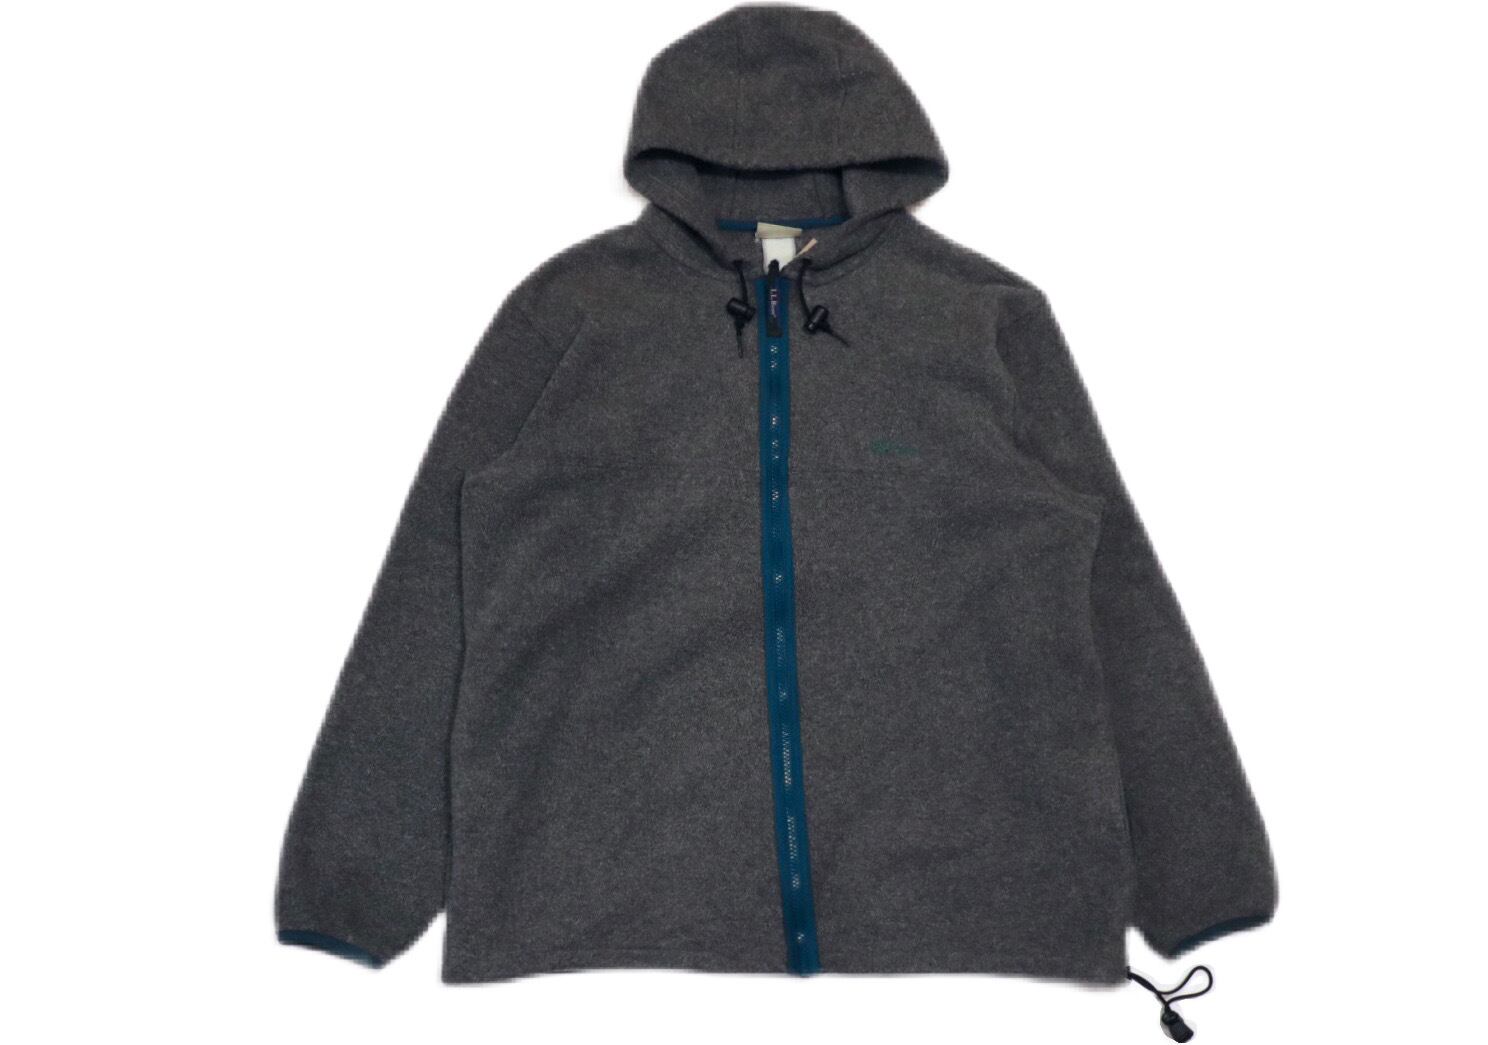 USED 80s L.LBean Fleece Hooded jacket - 01720